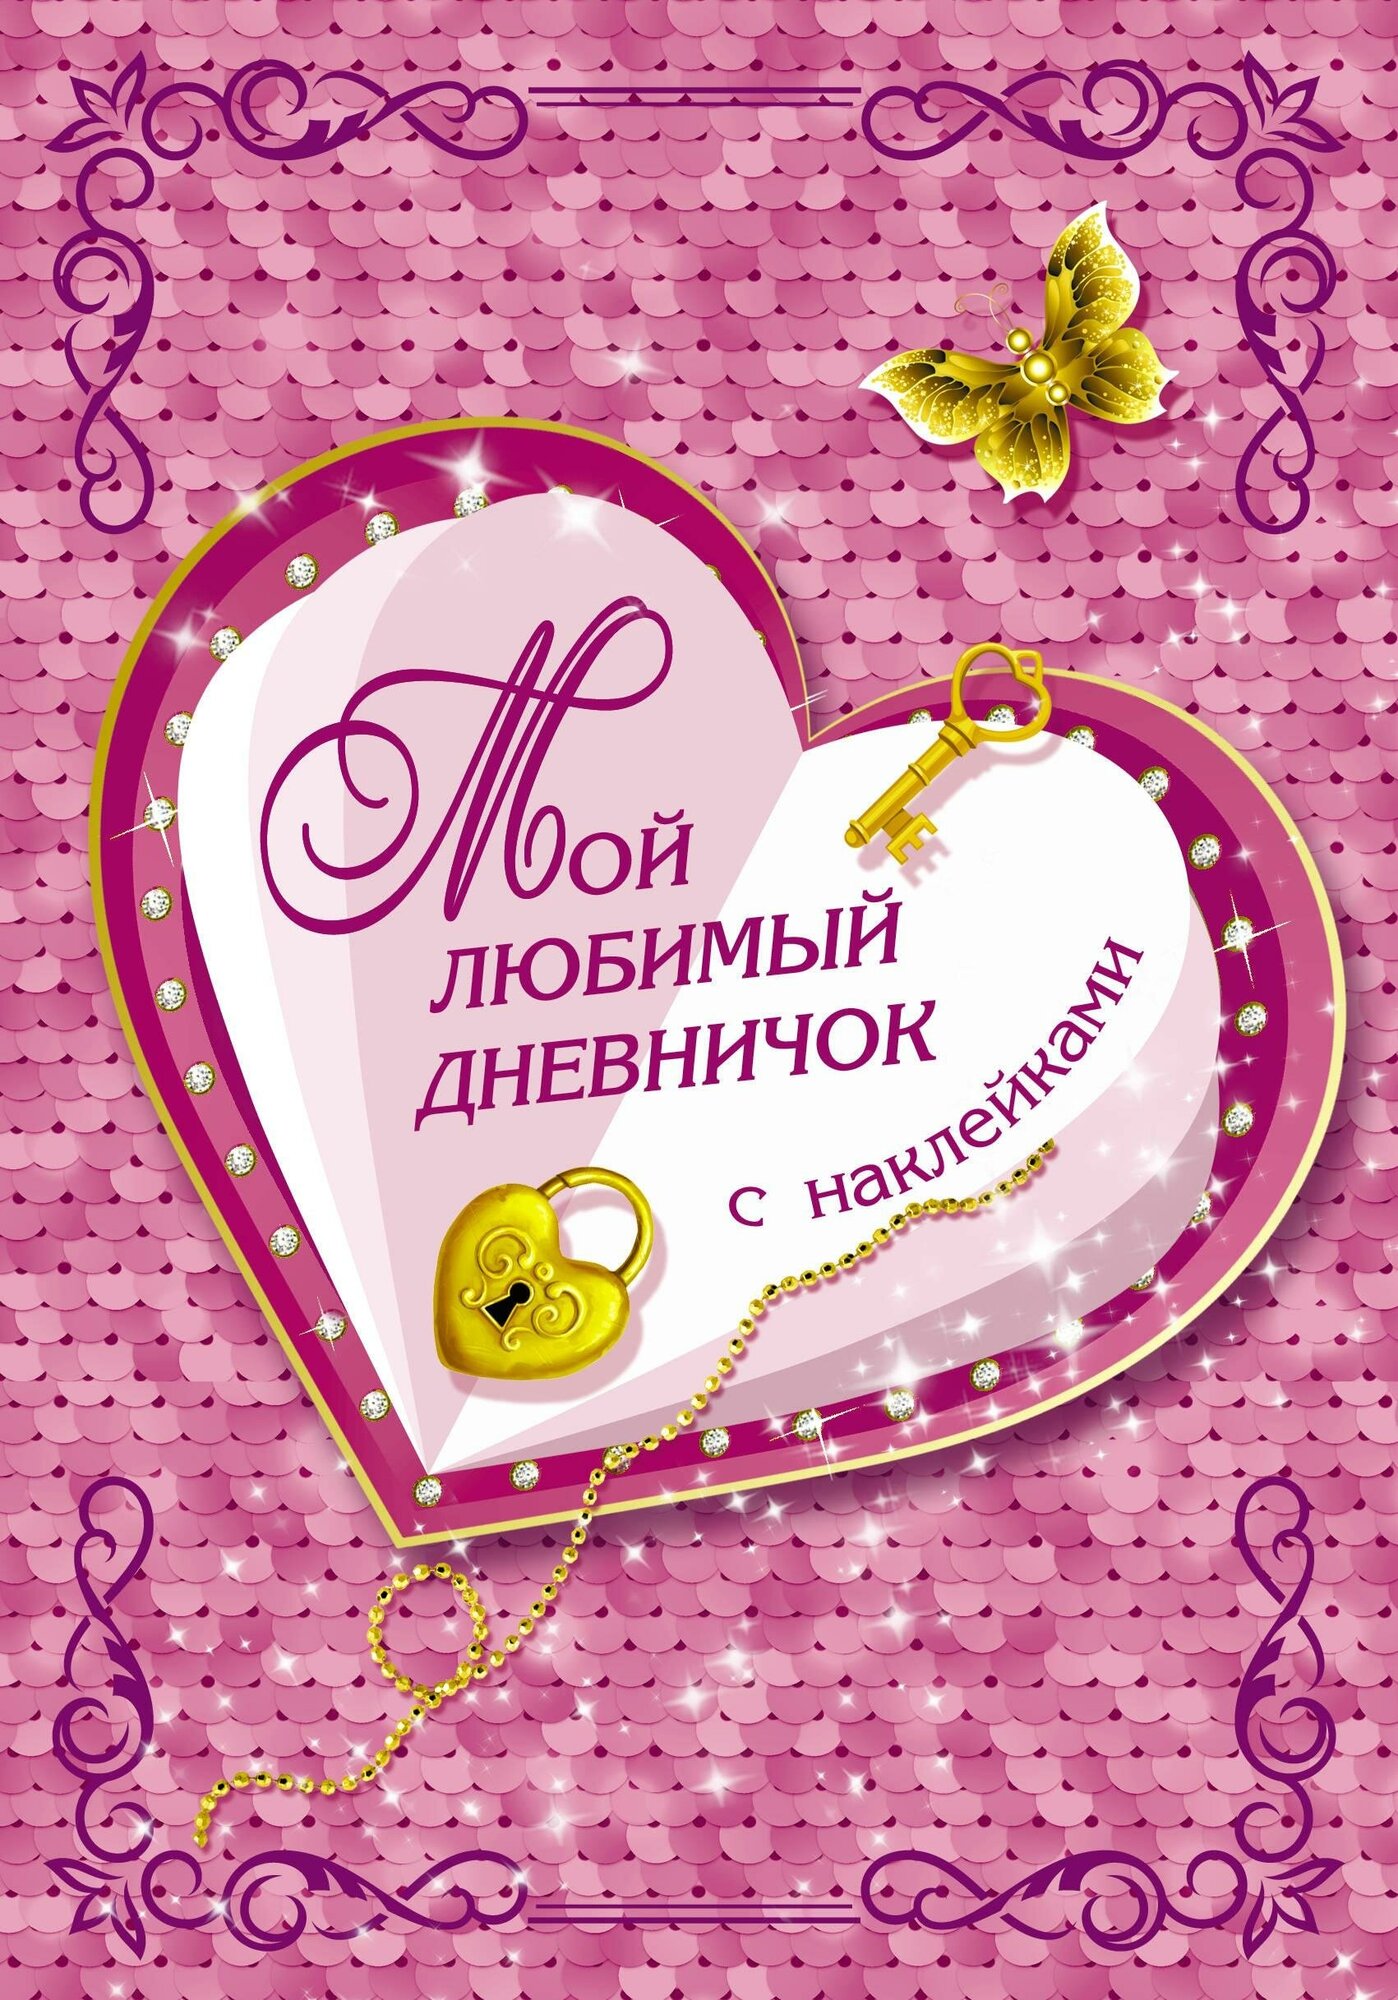 Дмитриева В. Г. Мой любимый дневничок с наклейками. Волшебный дневник